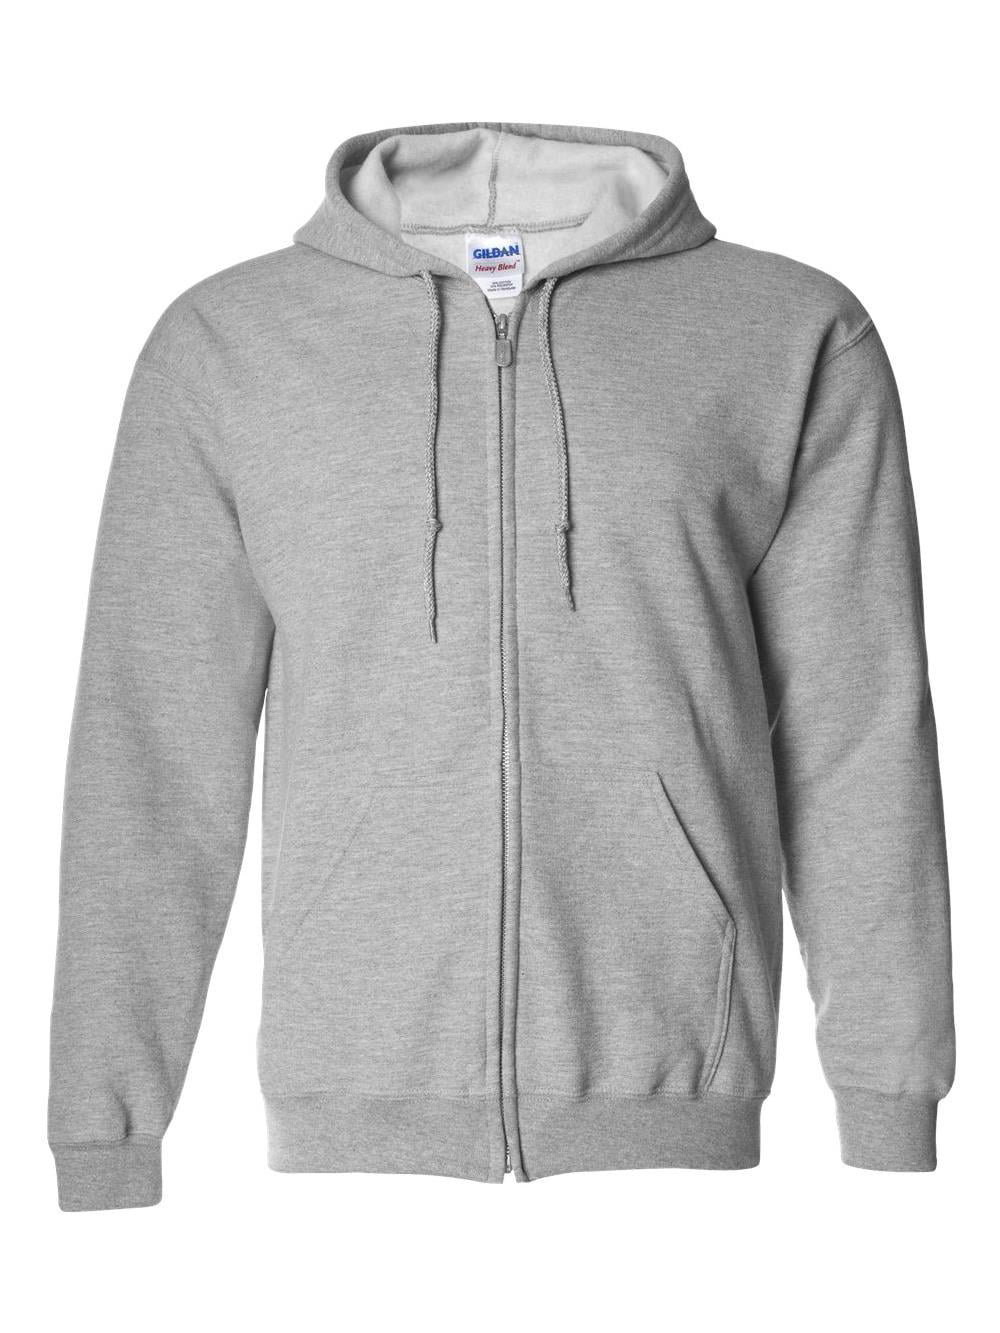 Gildan - Gildan Fleece Heavy Blend Full-Zip Hooded Sweatshirt 18600 ...